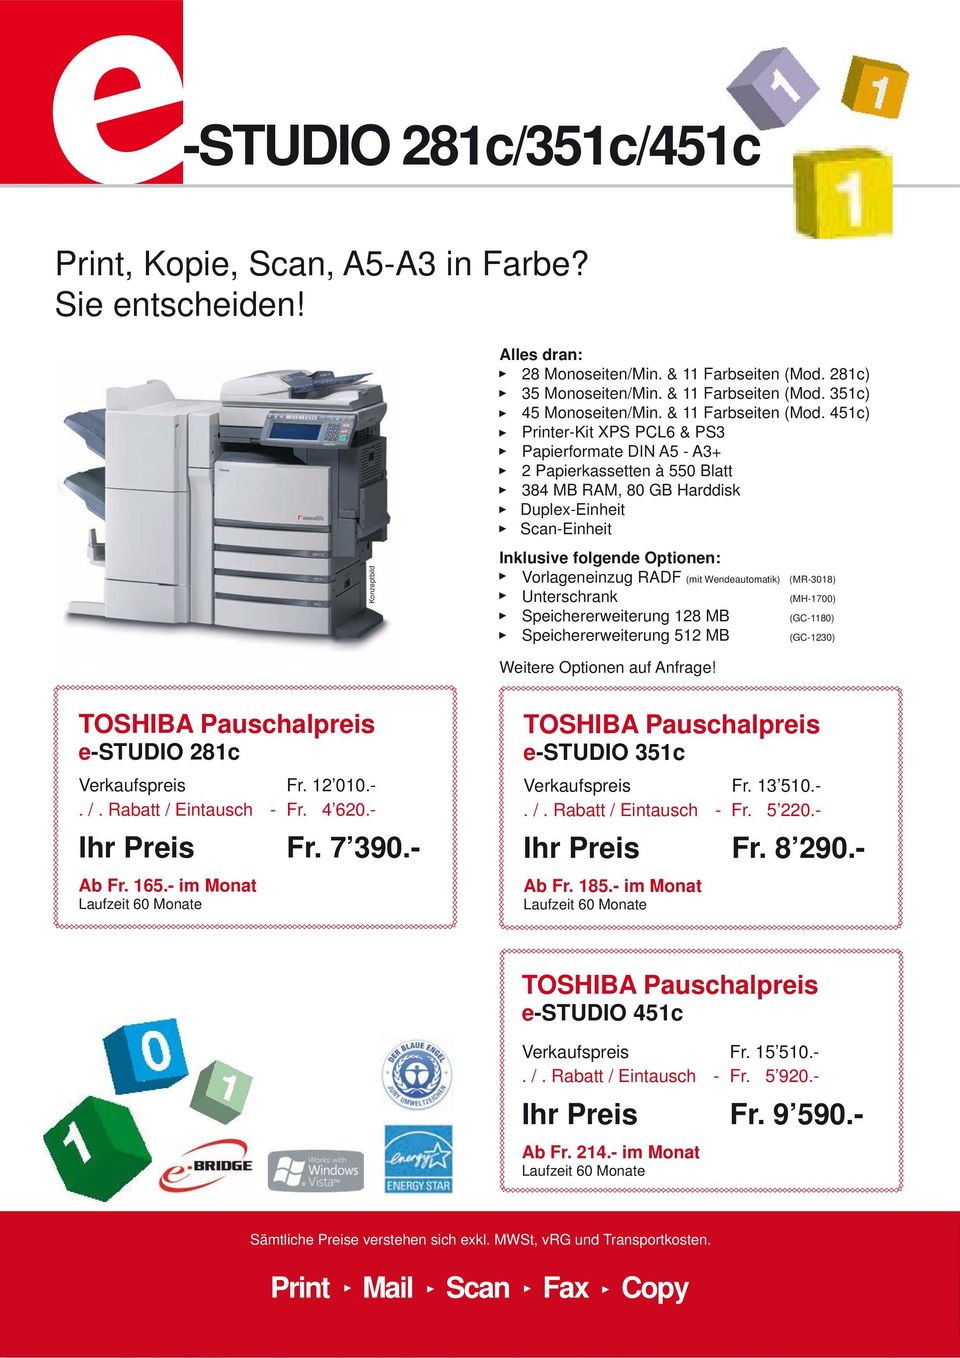 451c) Printer-Kit XPS PCL6 & PS3 Papierformate DIN A5 - A3+ 2 Papierkassetten à 550 Blatt 384 MB RAM, 80 GB Harddisk Duplex-Einheit Scan-Einheit Vorlageneinzug RADF (mit Wendeautomatik) (MR-3018)